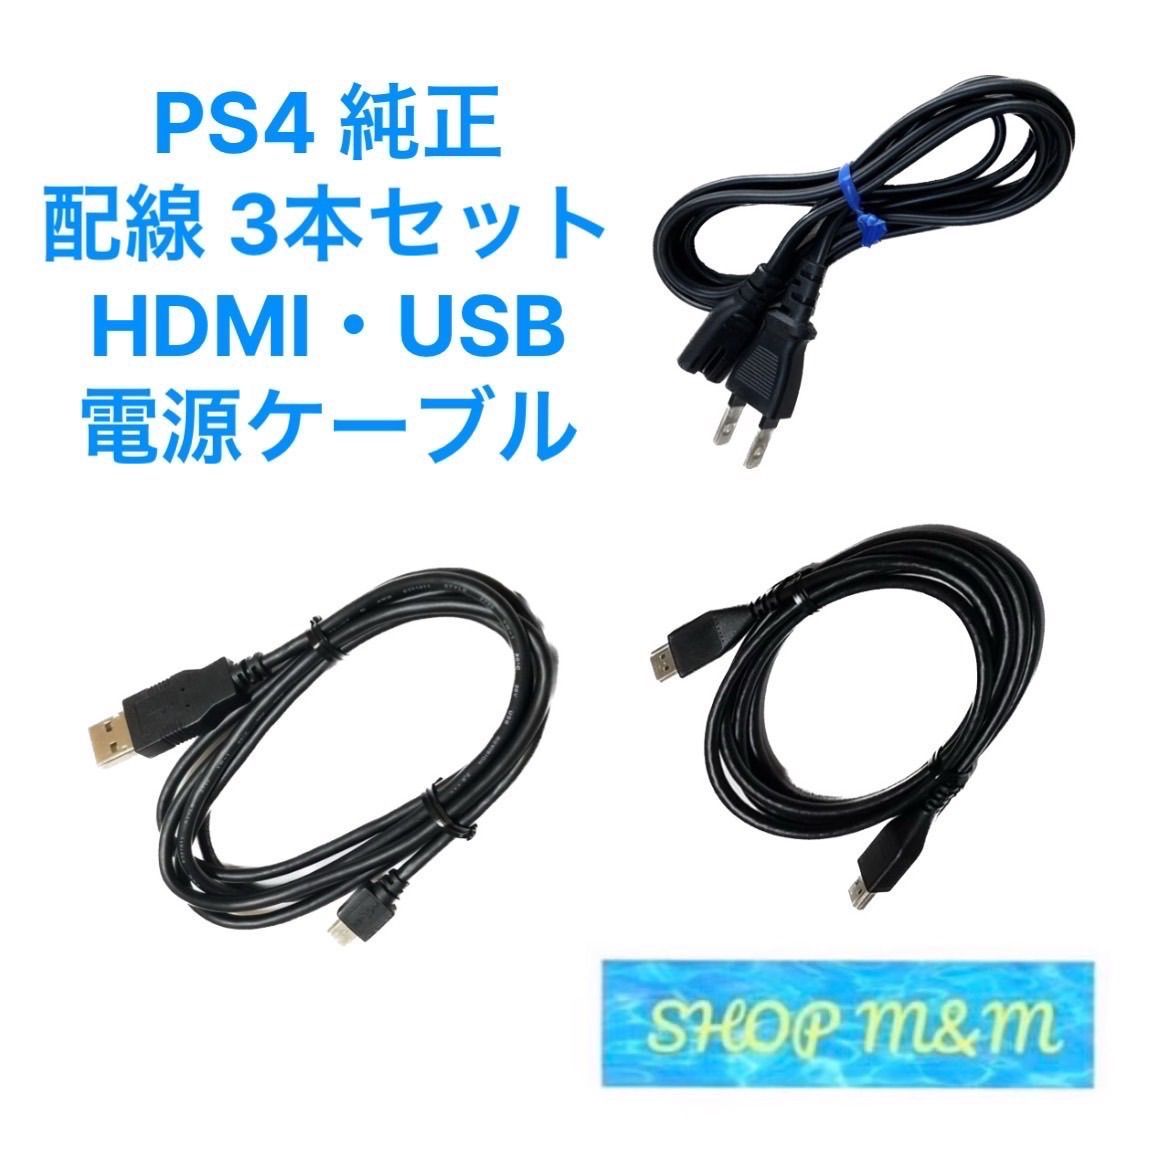 PS4 USBケーブル 電源コード HDMIケーブル 純正 付属品 SONY - メルカリ